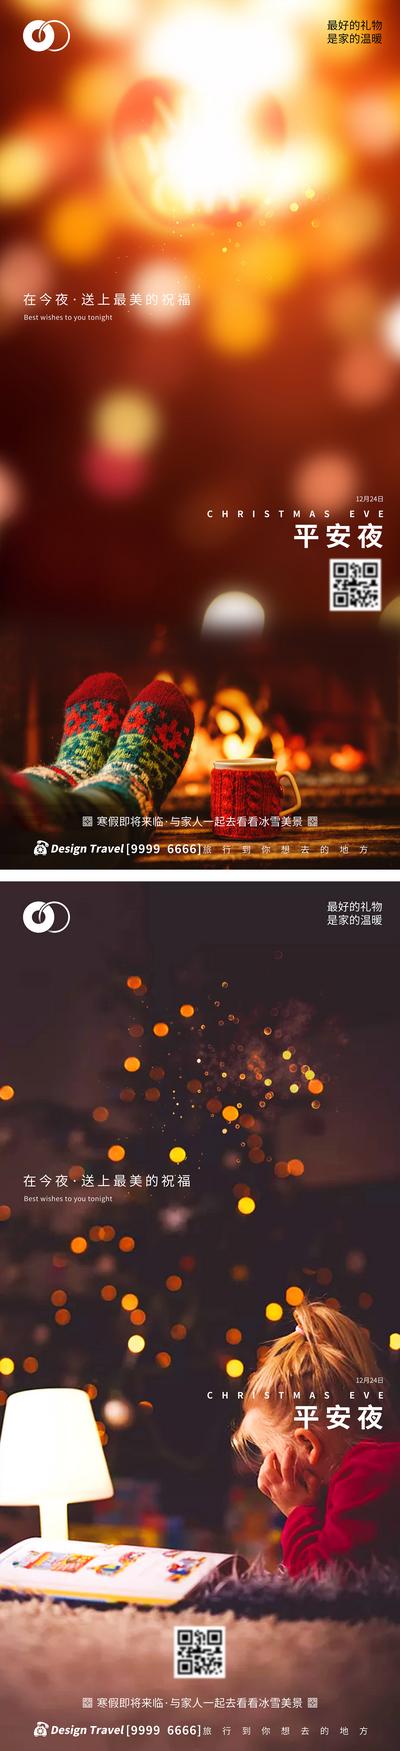 南门网 广告 海报 节日 平安夜 系列 西方 星光 光效 温馨 圣诞节 